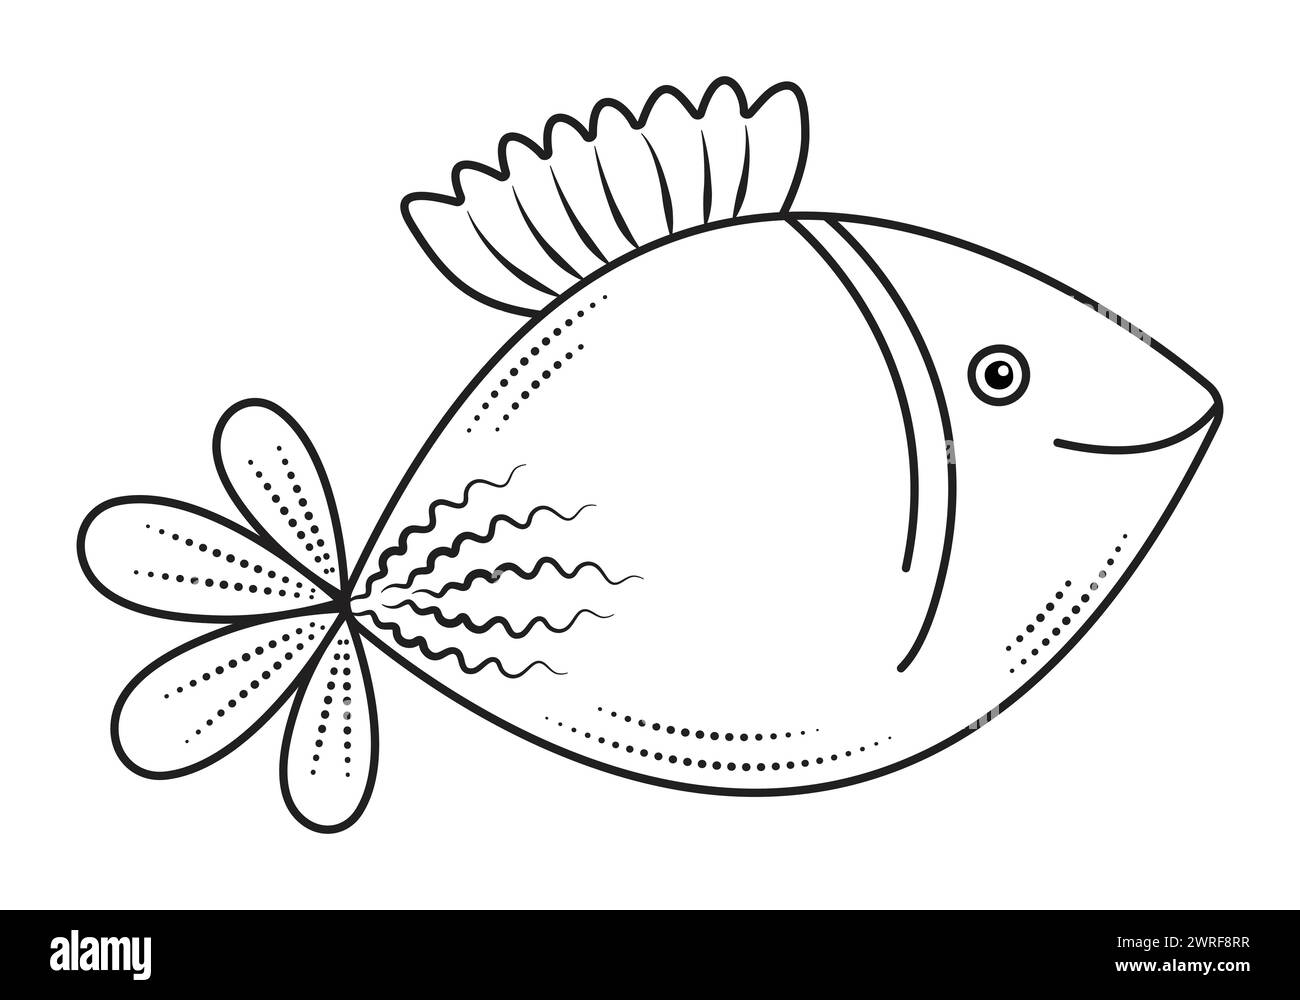 Poisson ange mignon, ligne noire illustration minimale, monochrome nautique preppy doodle Illustration de Vecteur